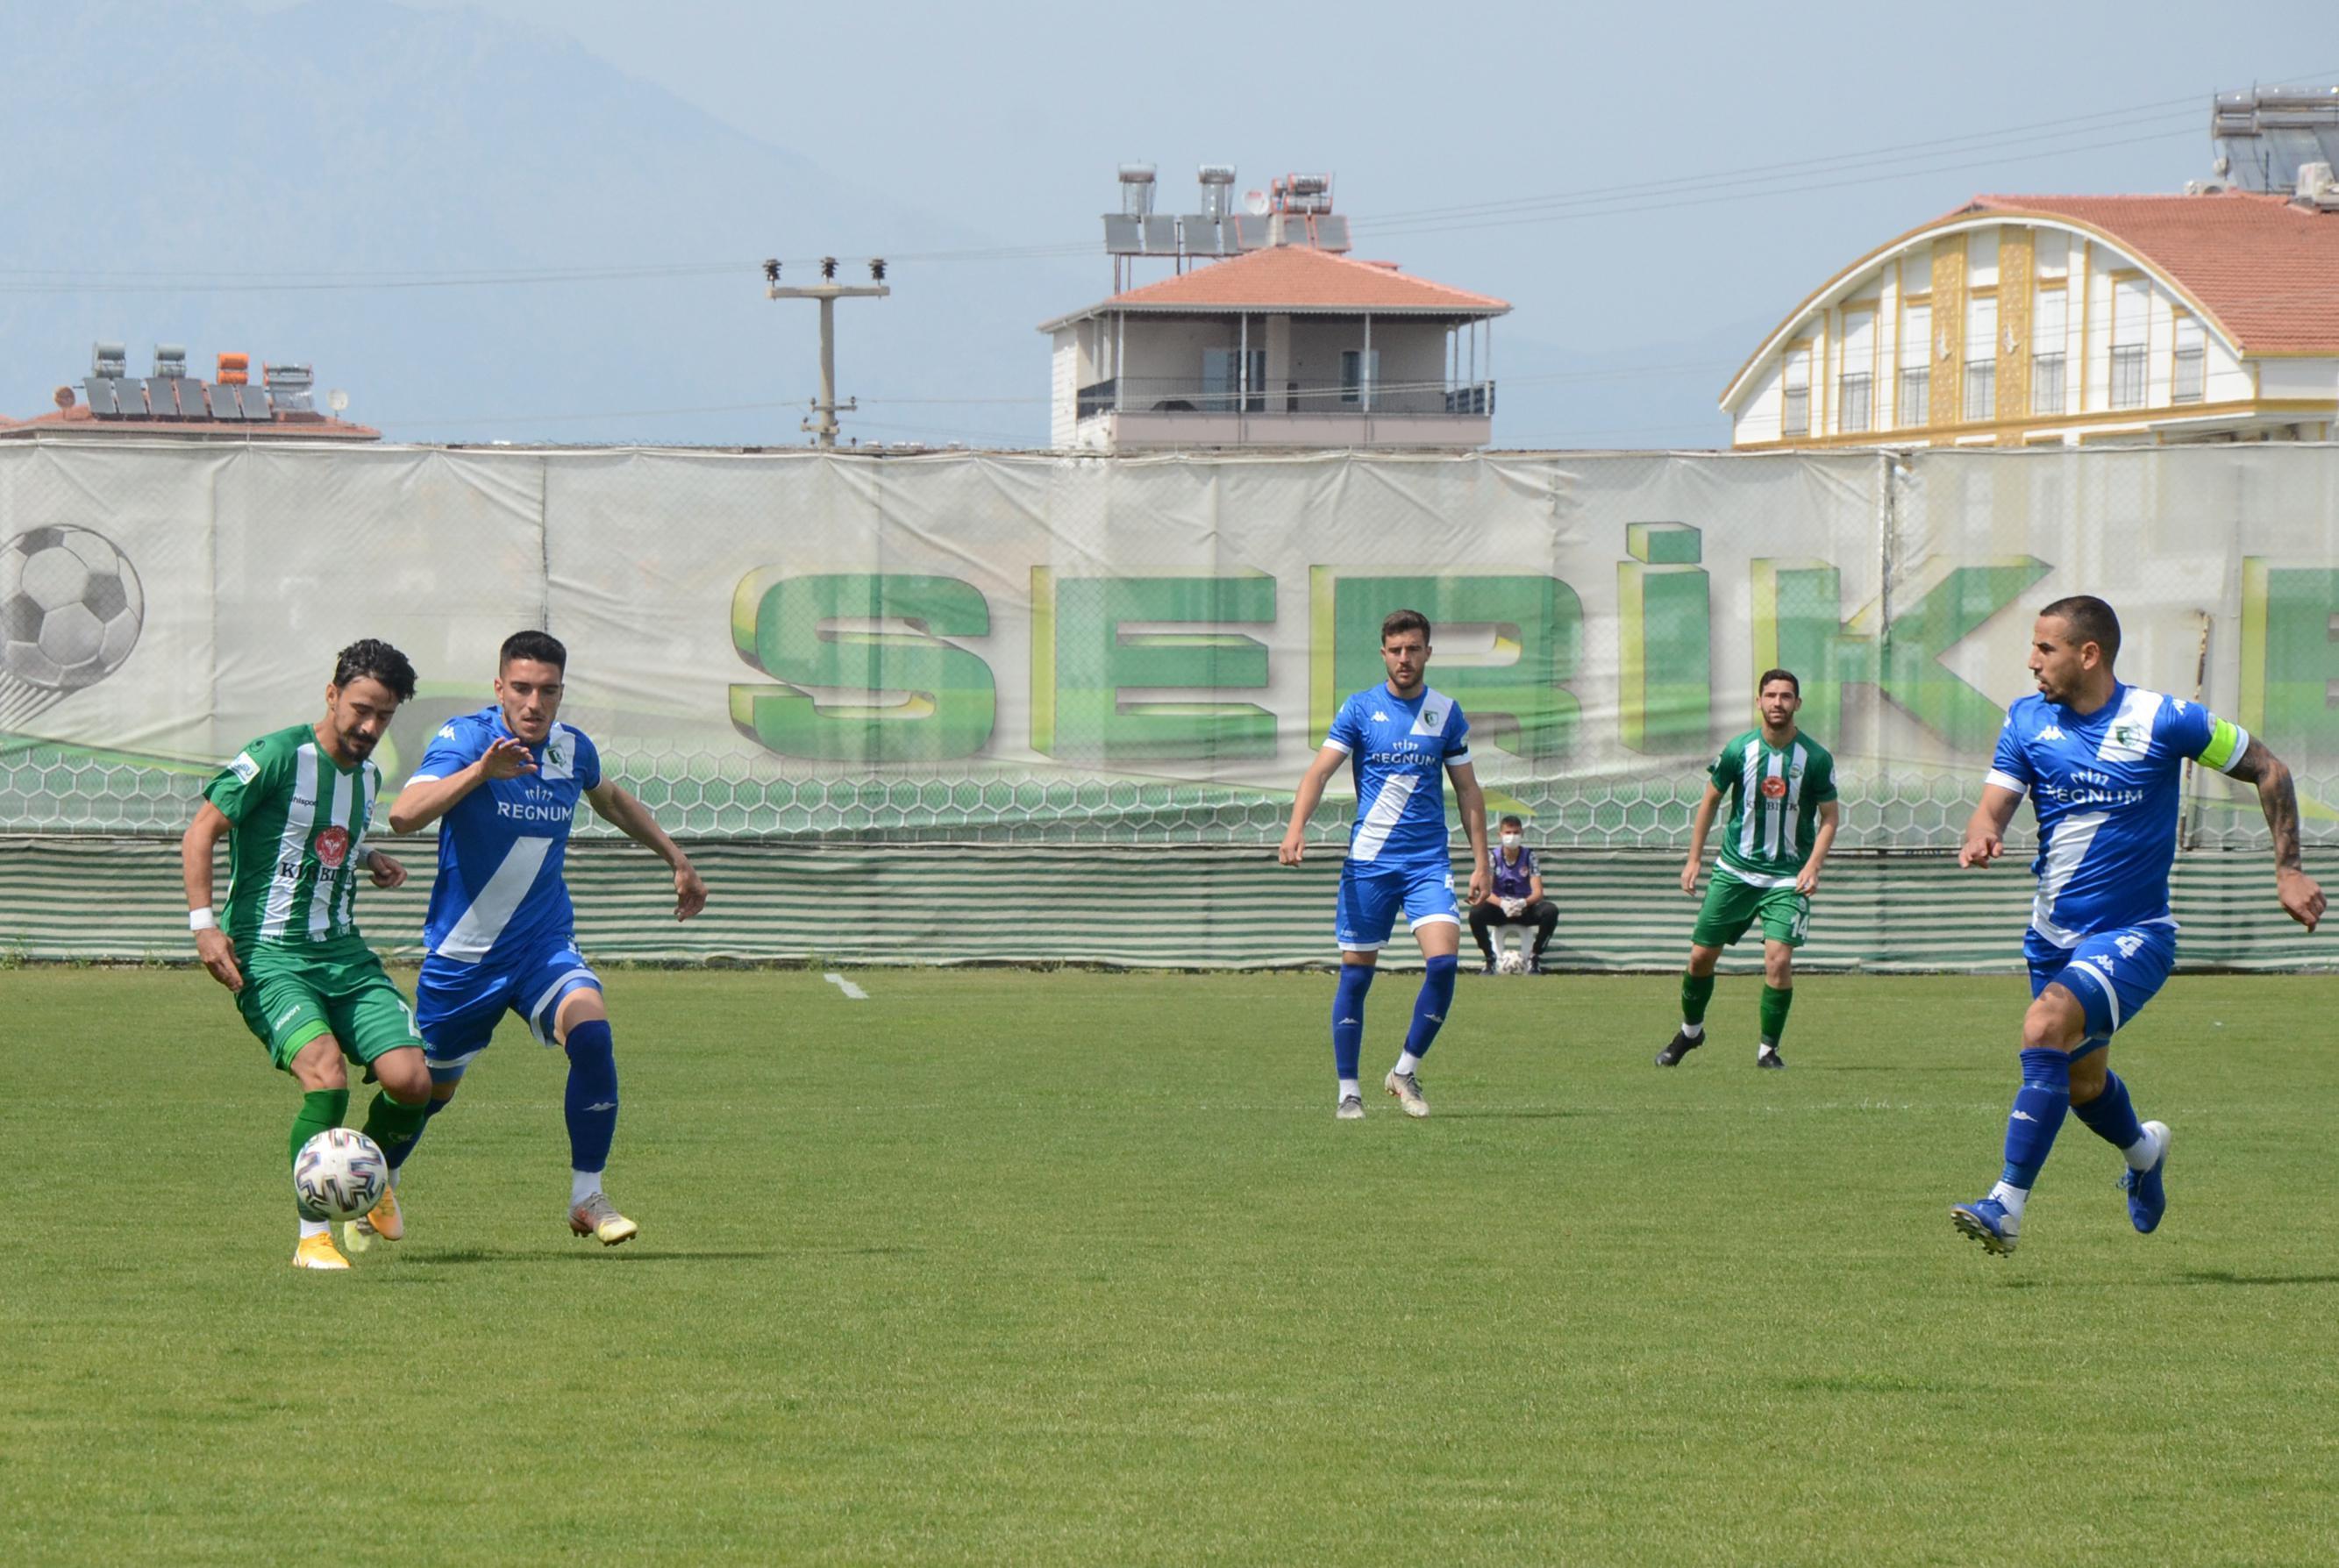 Misli.com 2. Lig | Bodrumsporun Play-Off şansı kalmadı